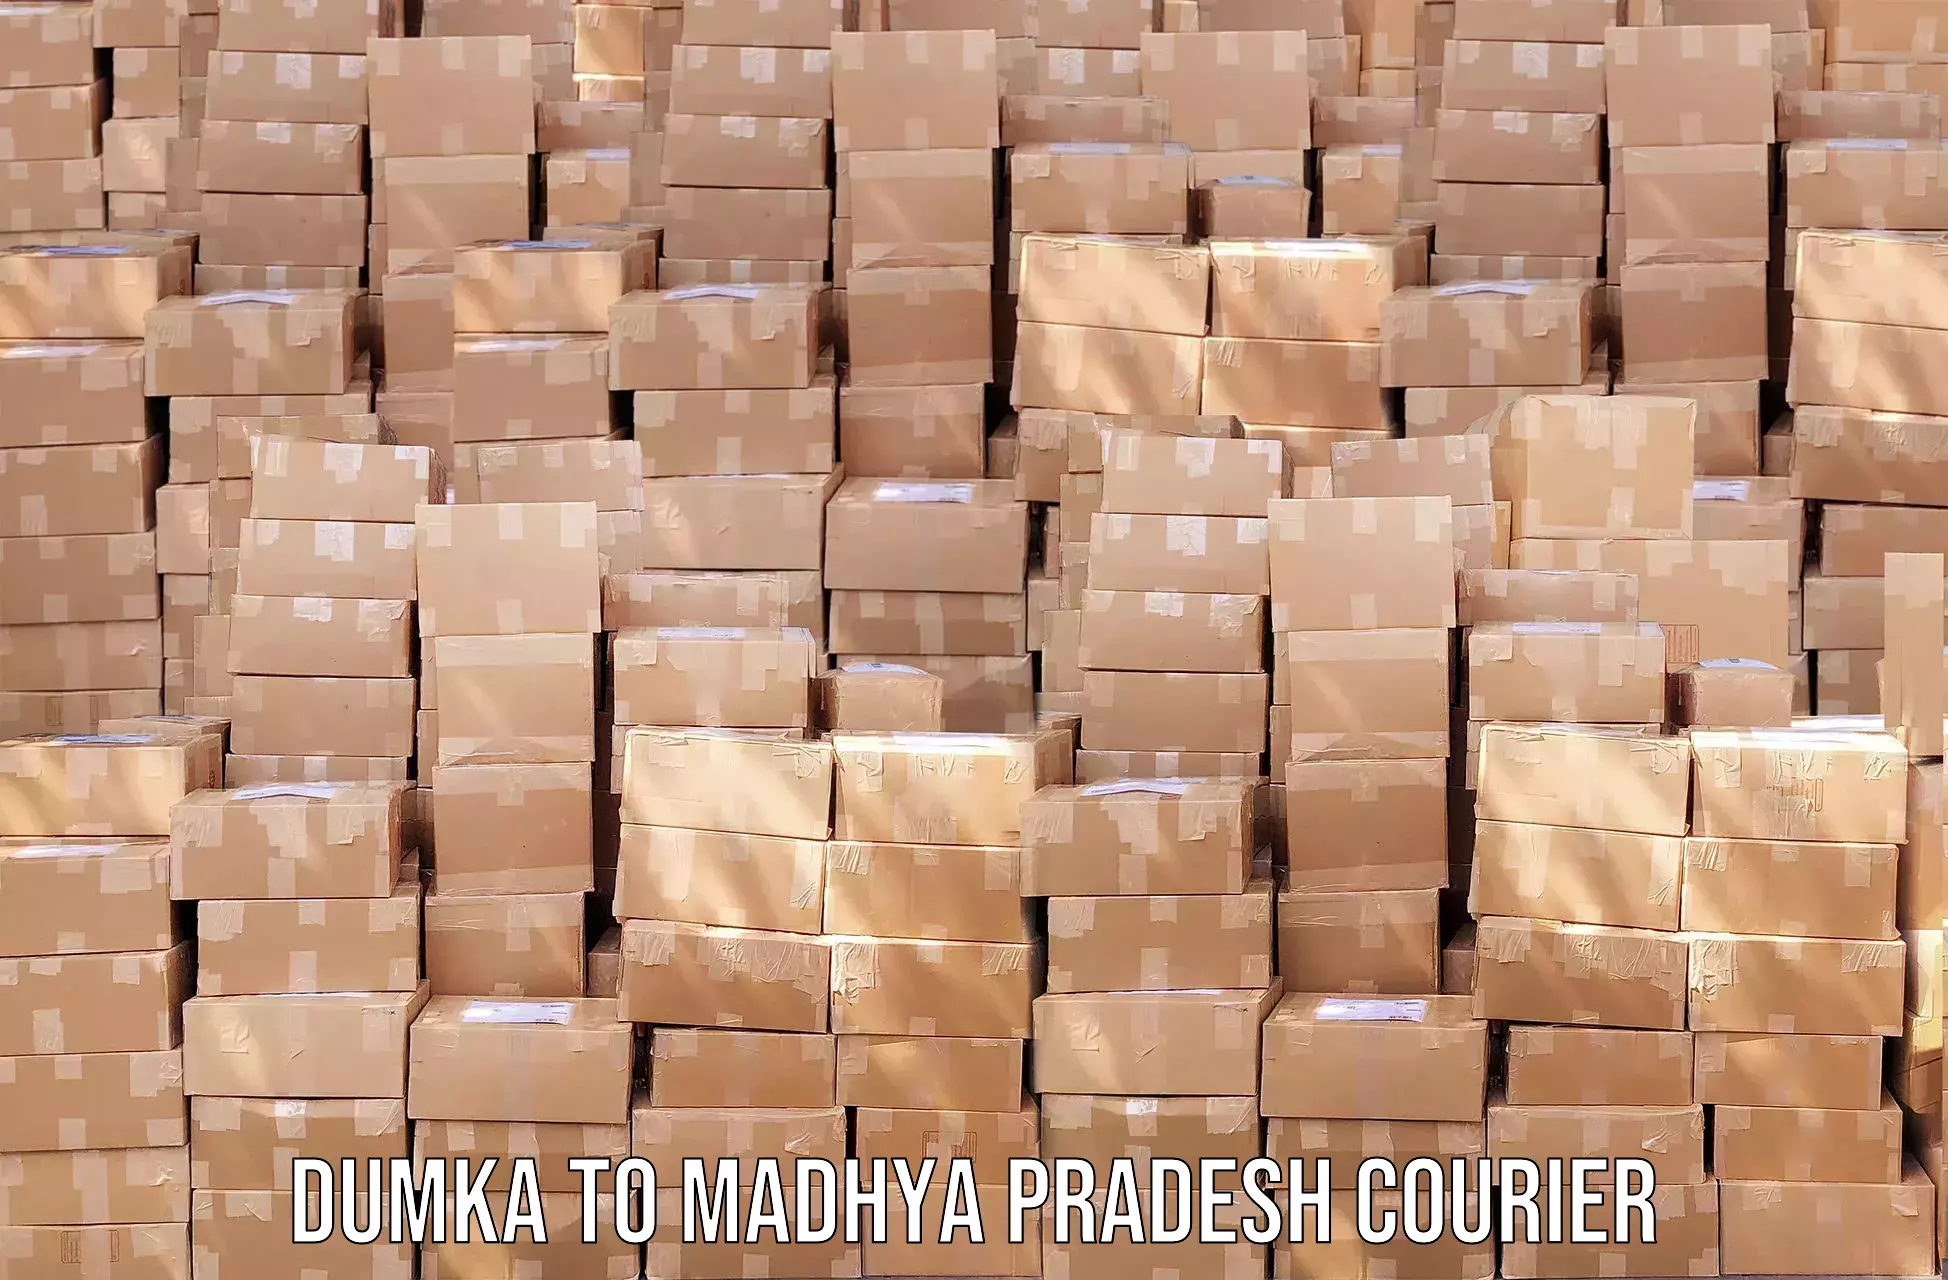 Dynamic courier operations Dumka to Jatara